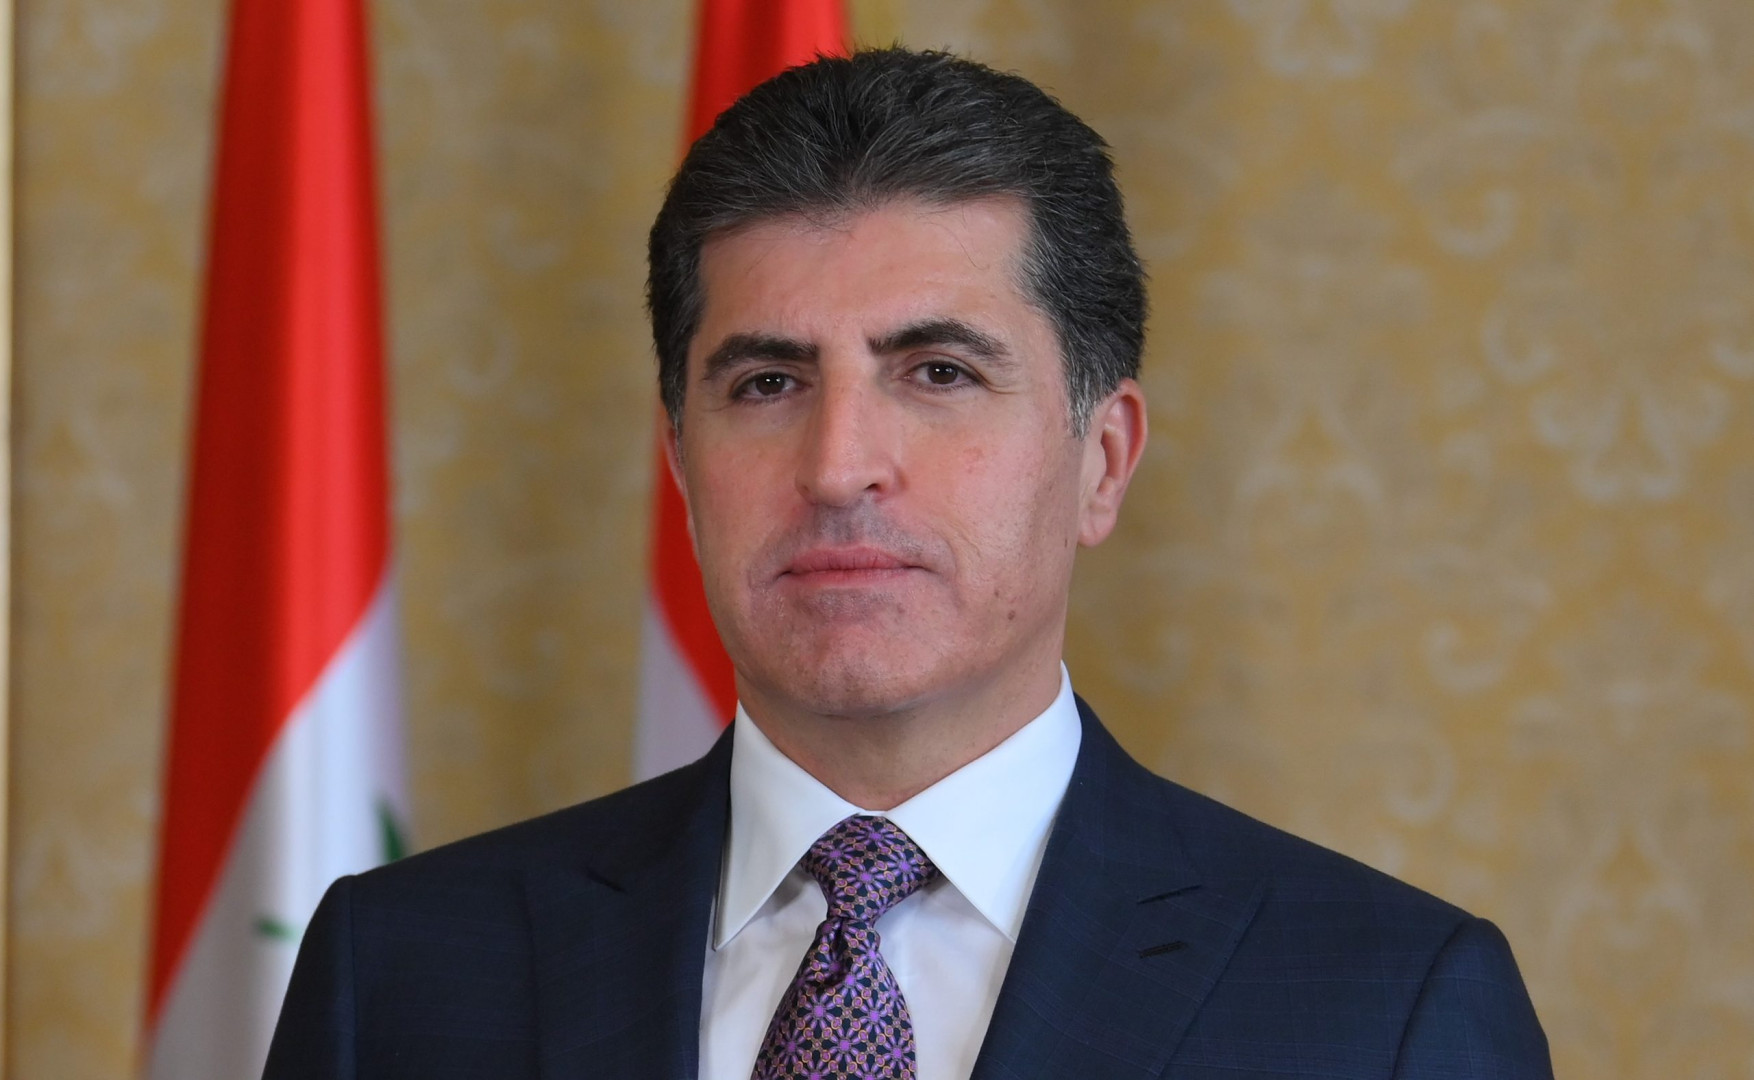 President Nechirvan Barzani to visit the UAE